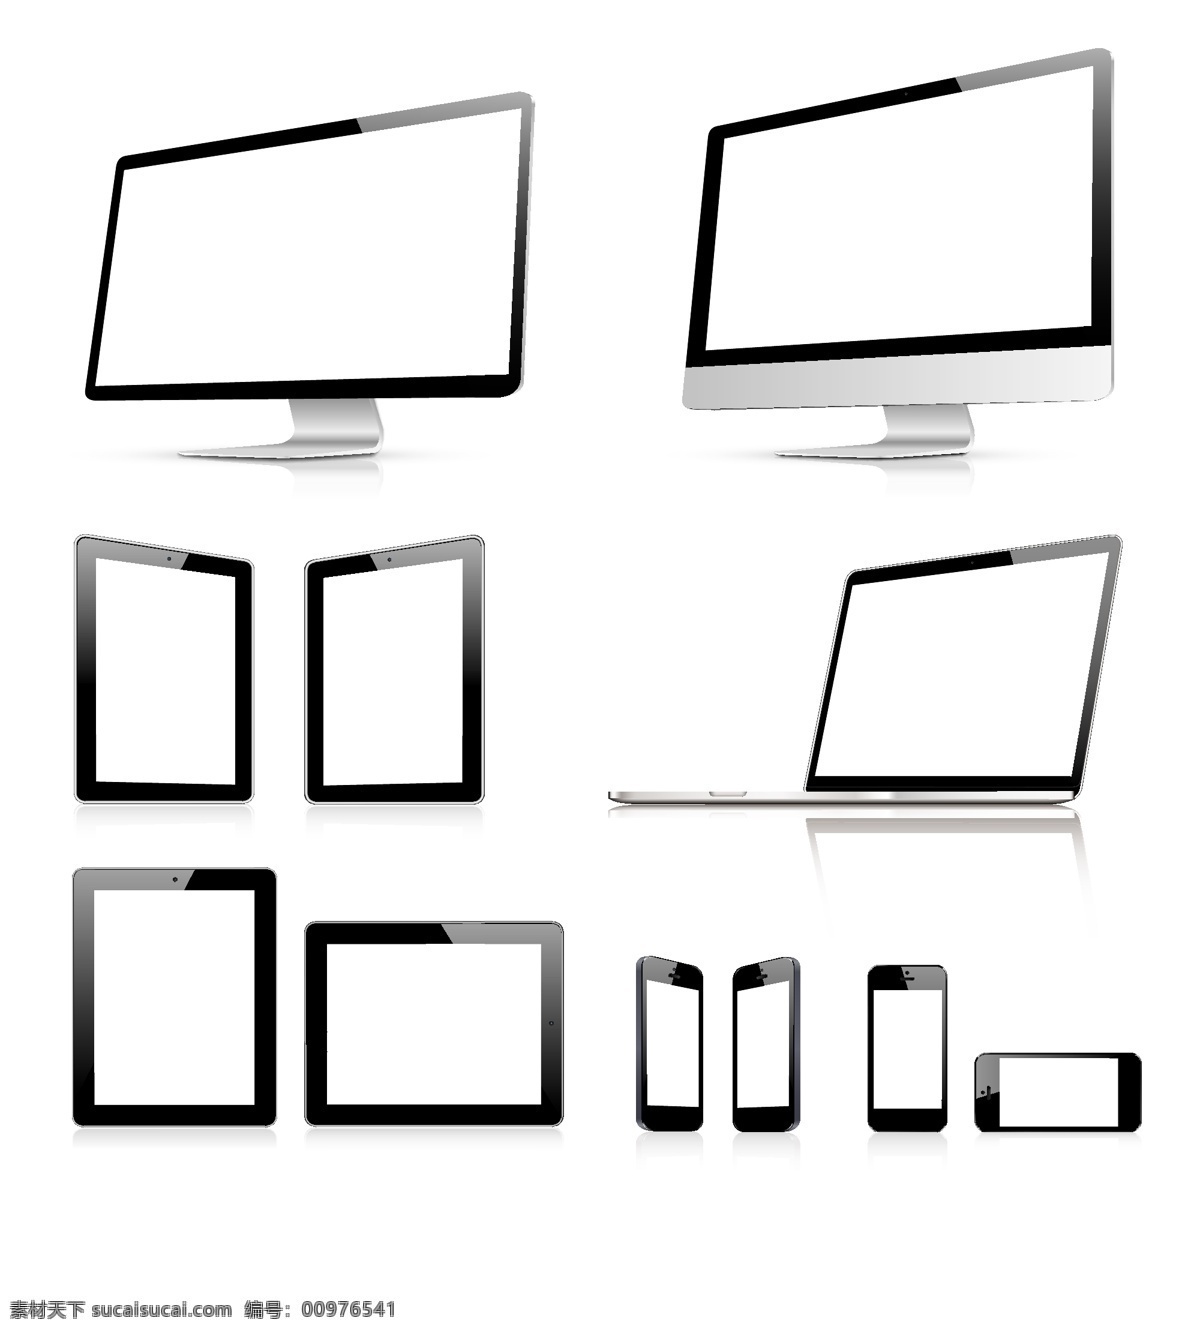 苹果 平板电脑 手机 苹果平板 macbook imac iphone ipad 电脑网络 生活百科 矢量